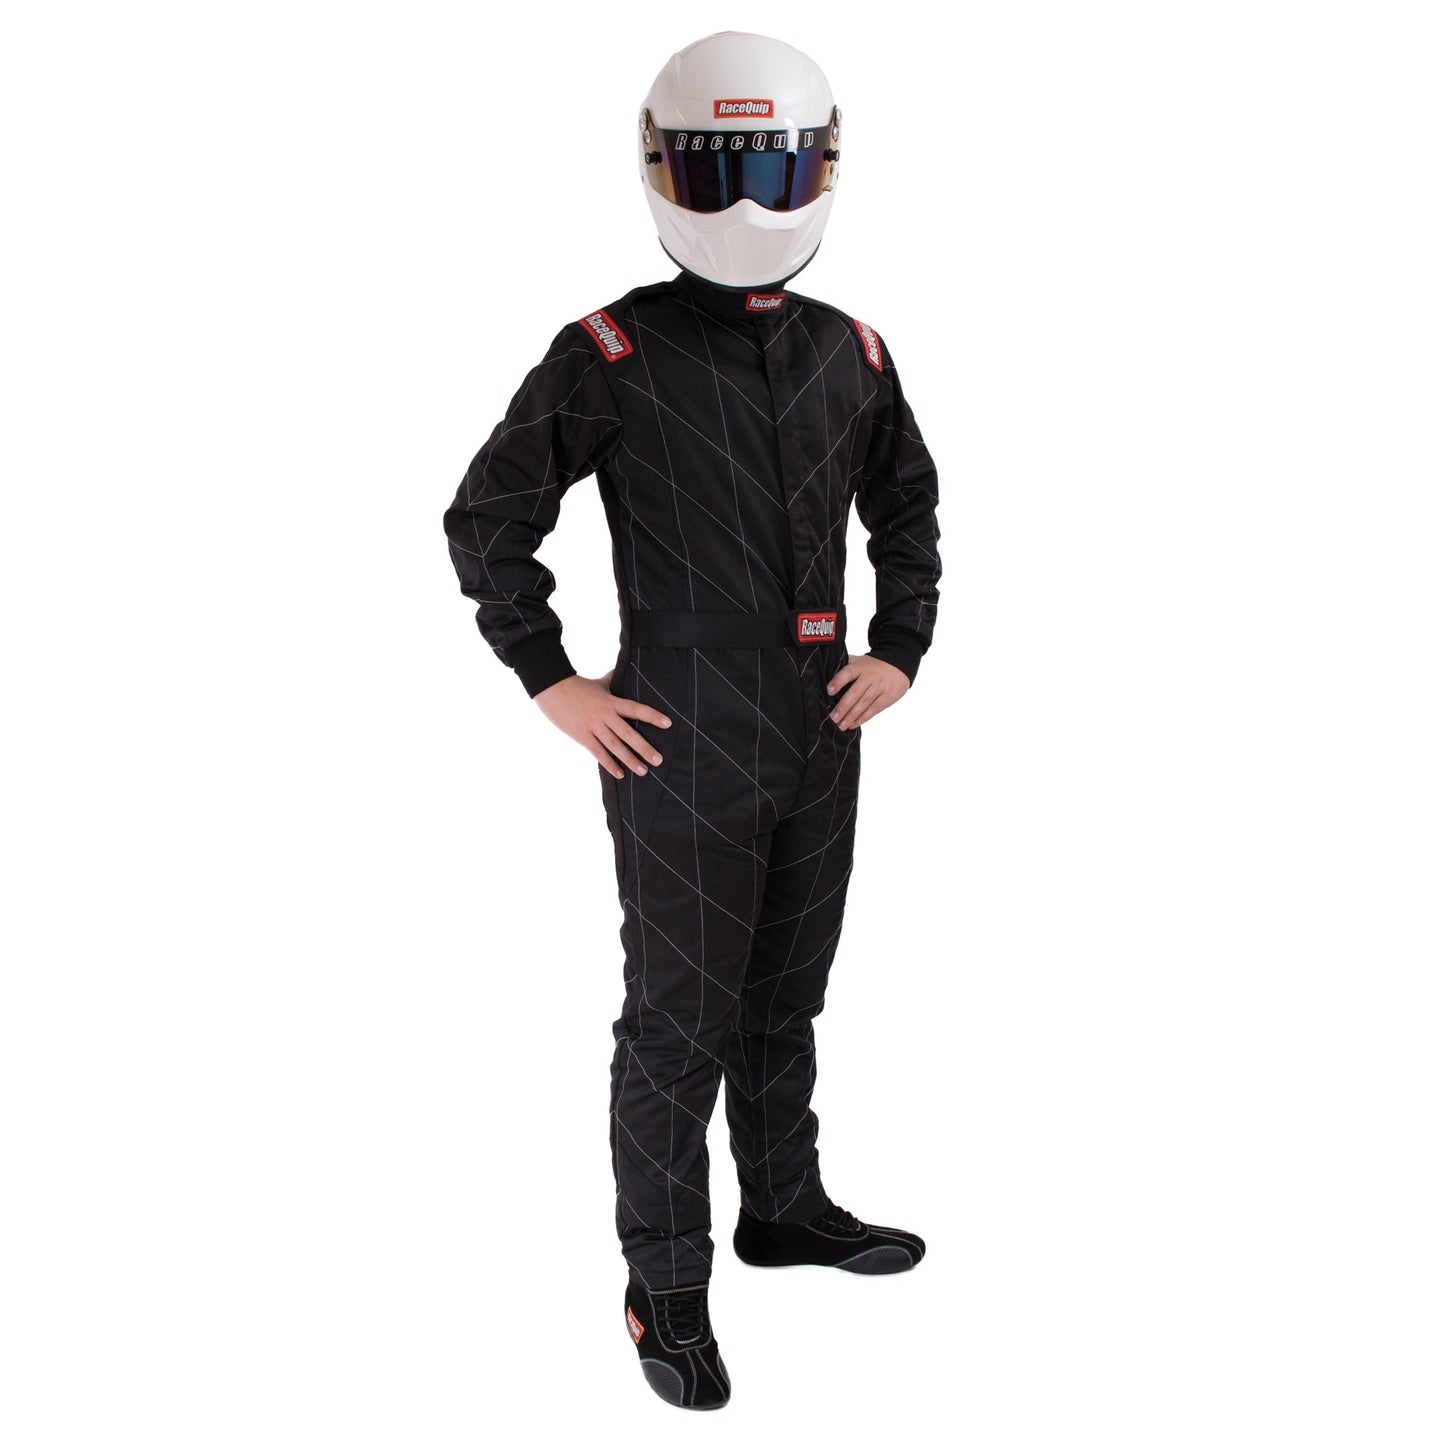 RaceQuip: traje contra incendios de piloto de carreras multicapa de una pieza; SFI 3.2A/ 5